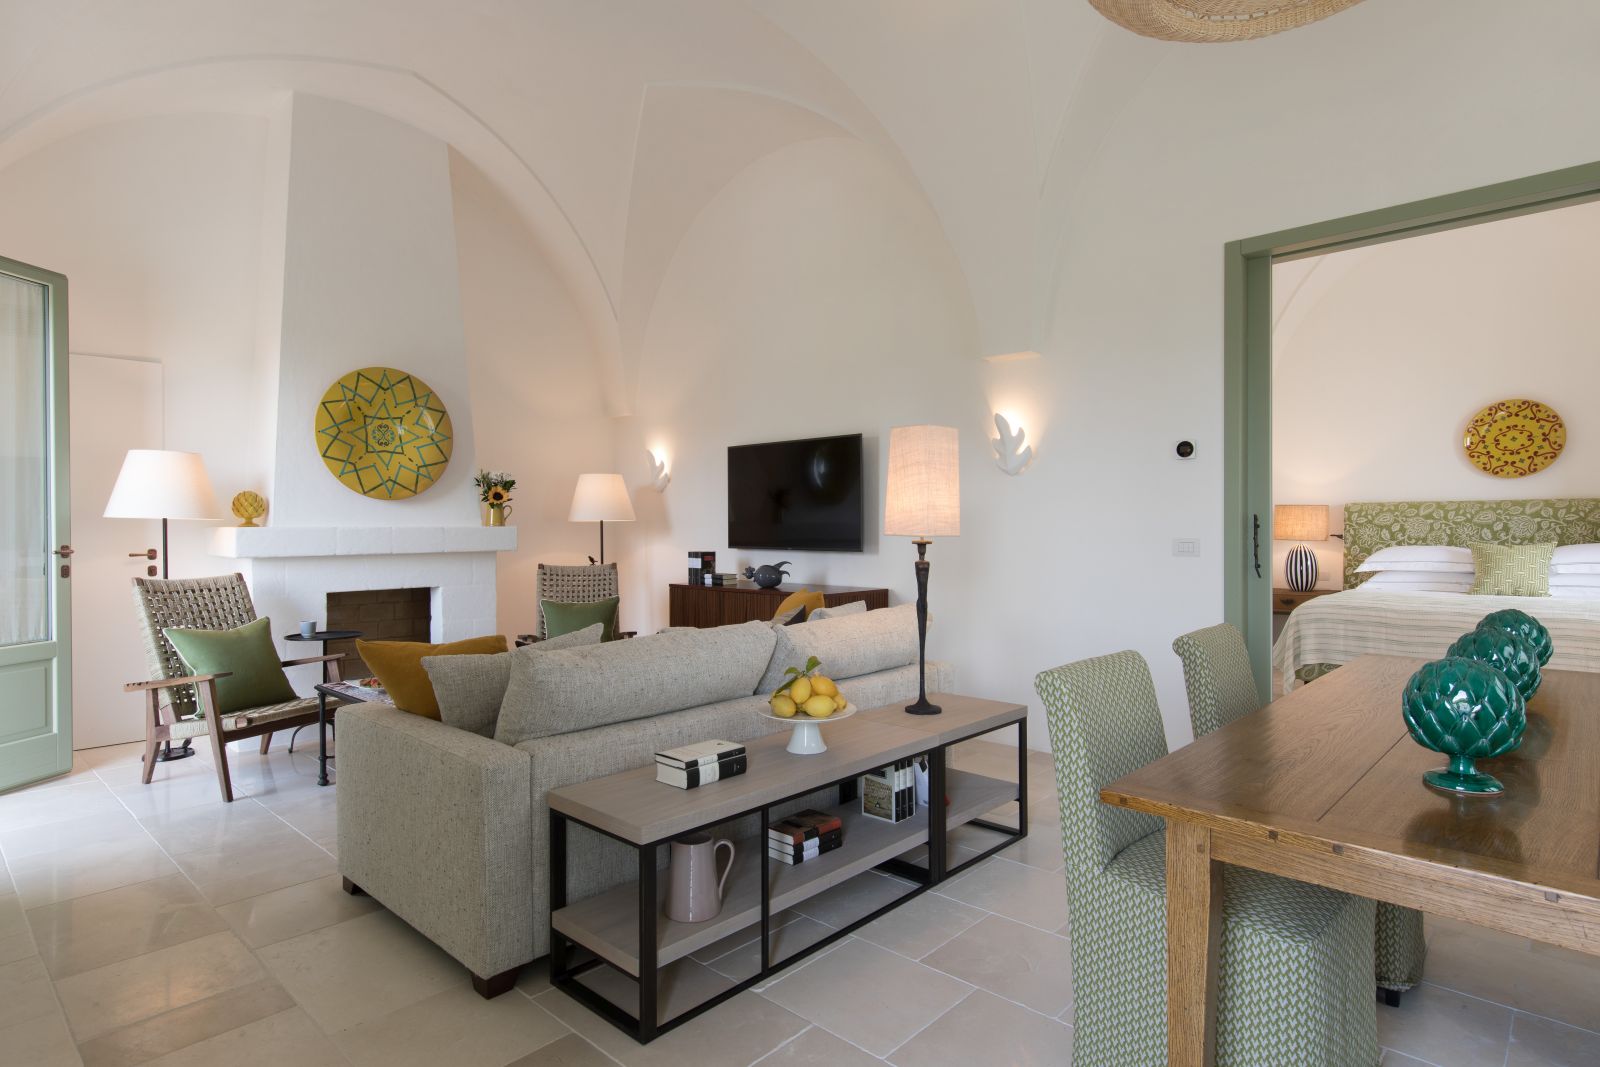 Grand Suite at Masseria Torre Maizza in Puglia